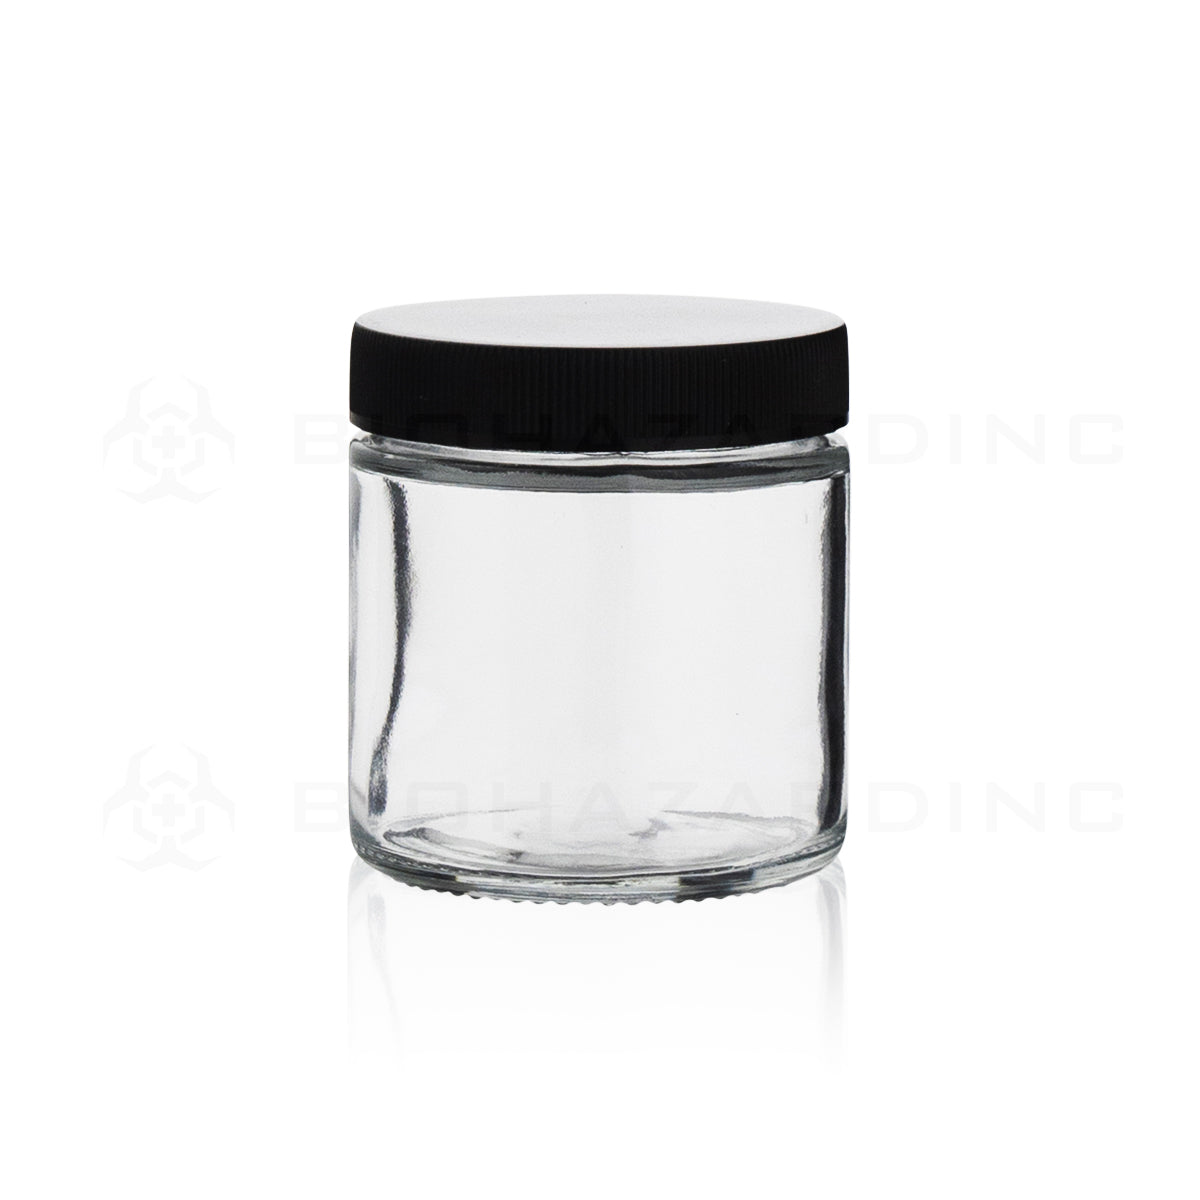 Glass Jar | Straight Sided Clear Glass Jars w/ Black Caps | 3oz - 150 Count Glass Jar Biohazard Inc   